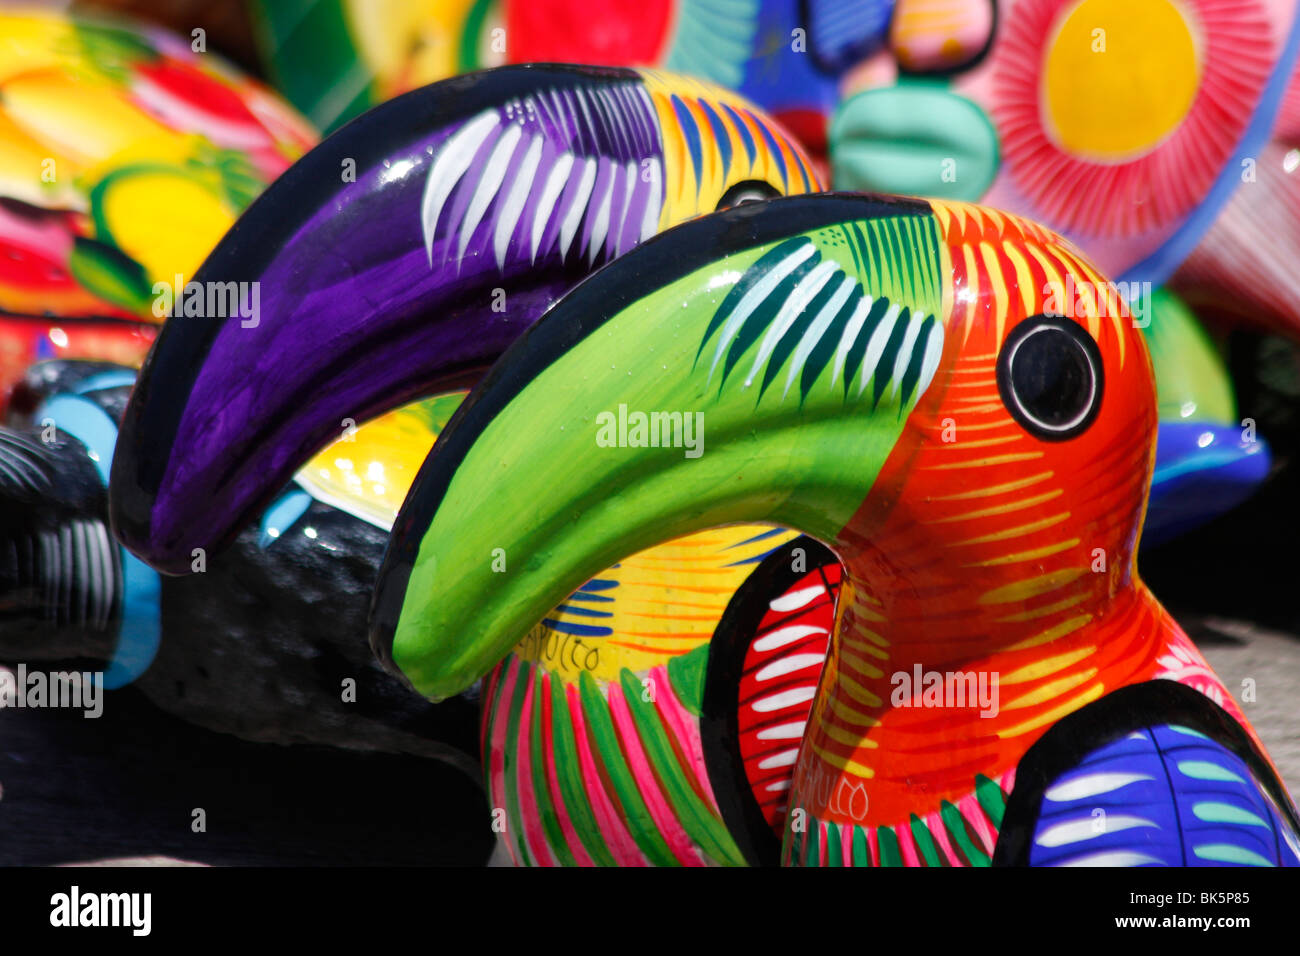 Les oiseaux et les poissons aux couleurs vives de souvenirs pour les touristes à Acapulco, Mexique Banque D'Images